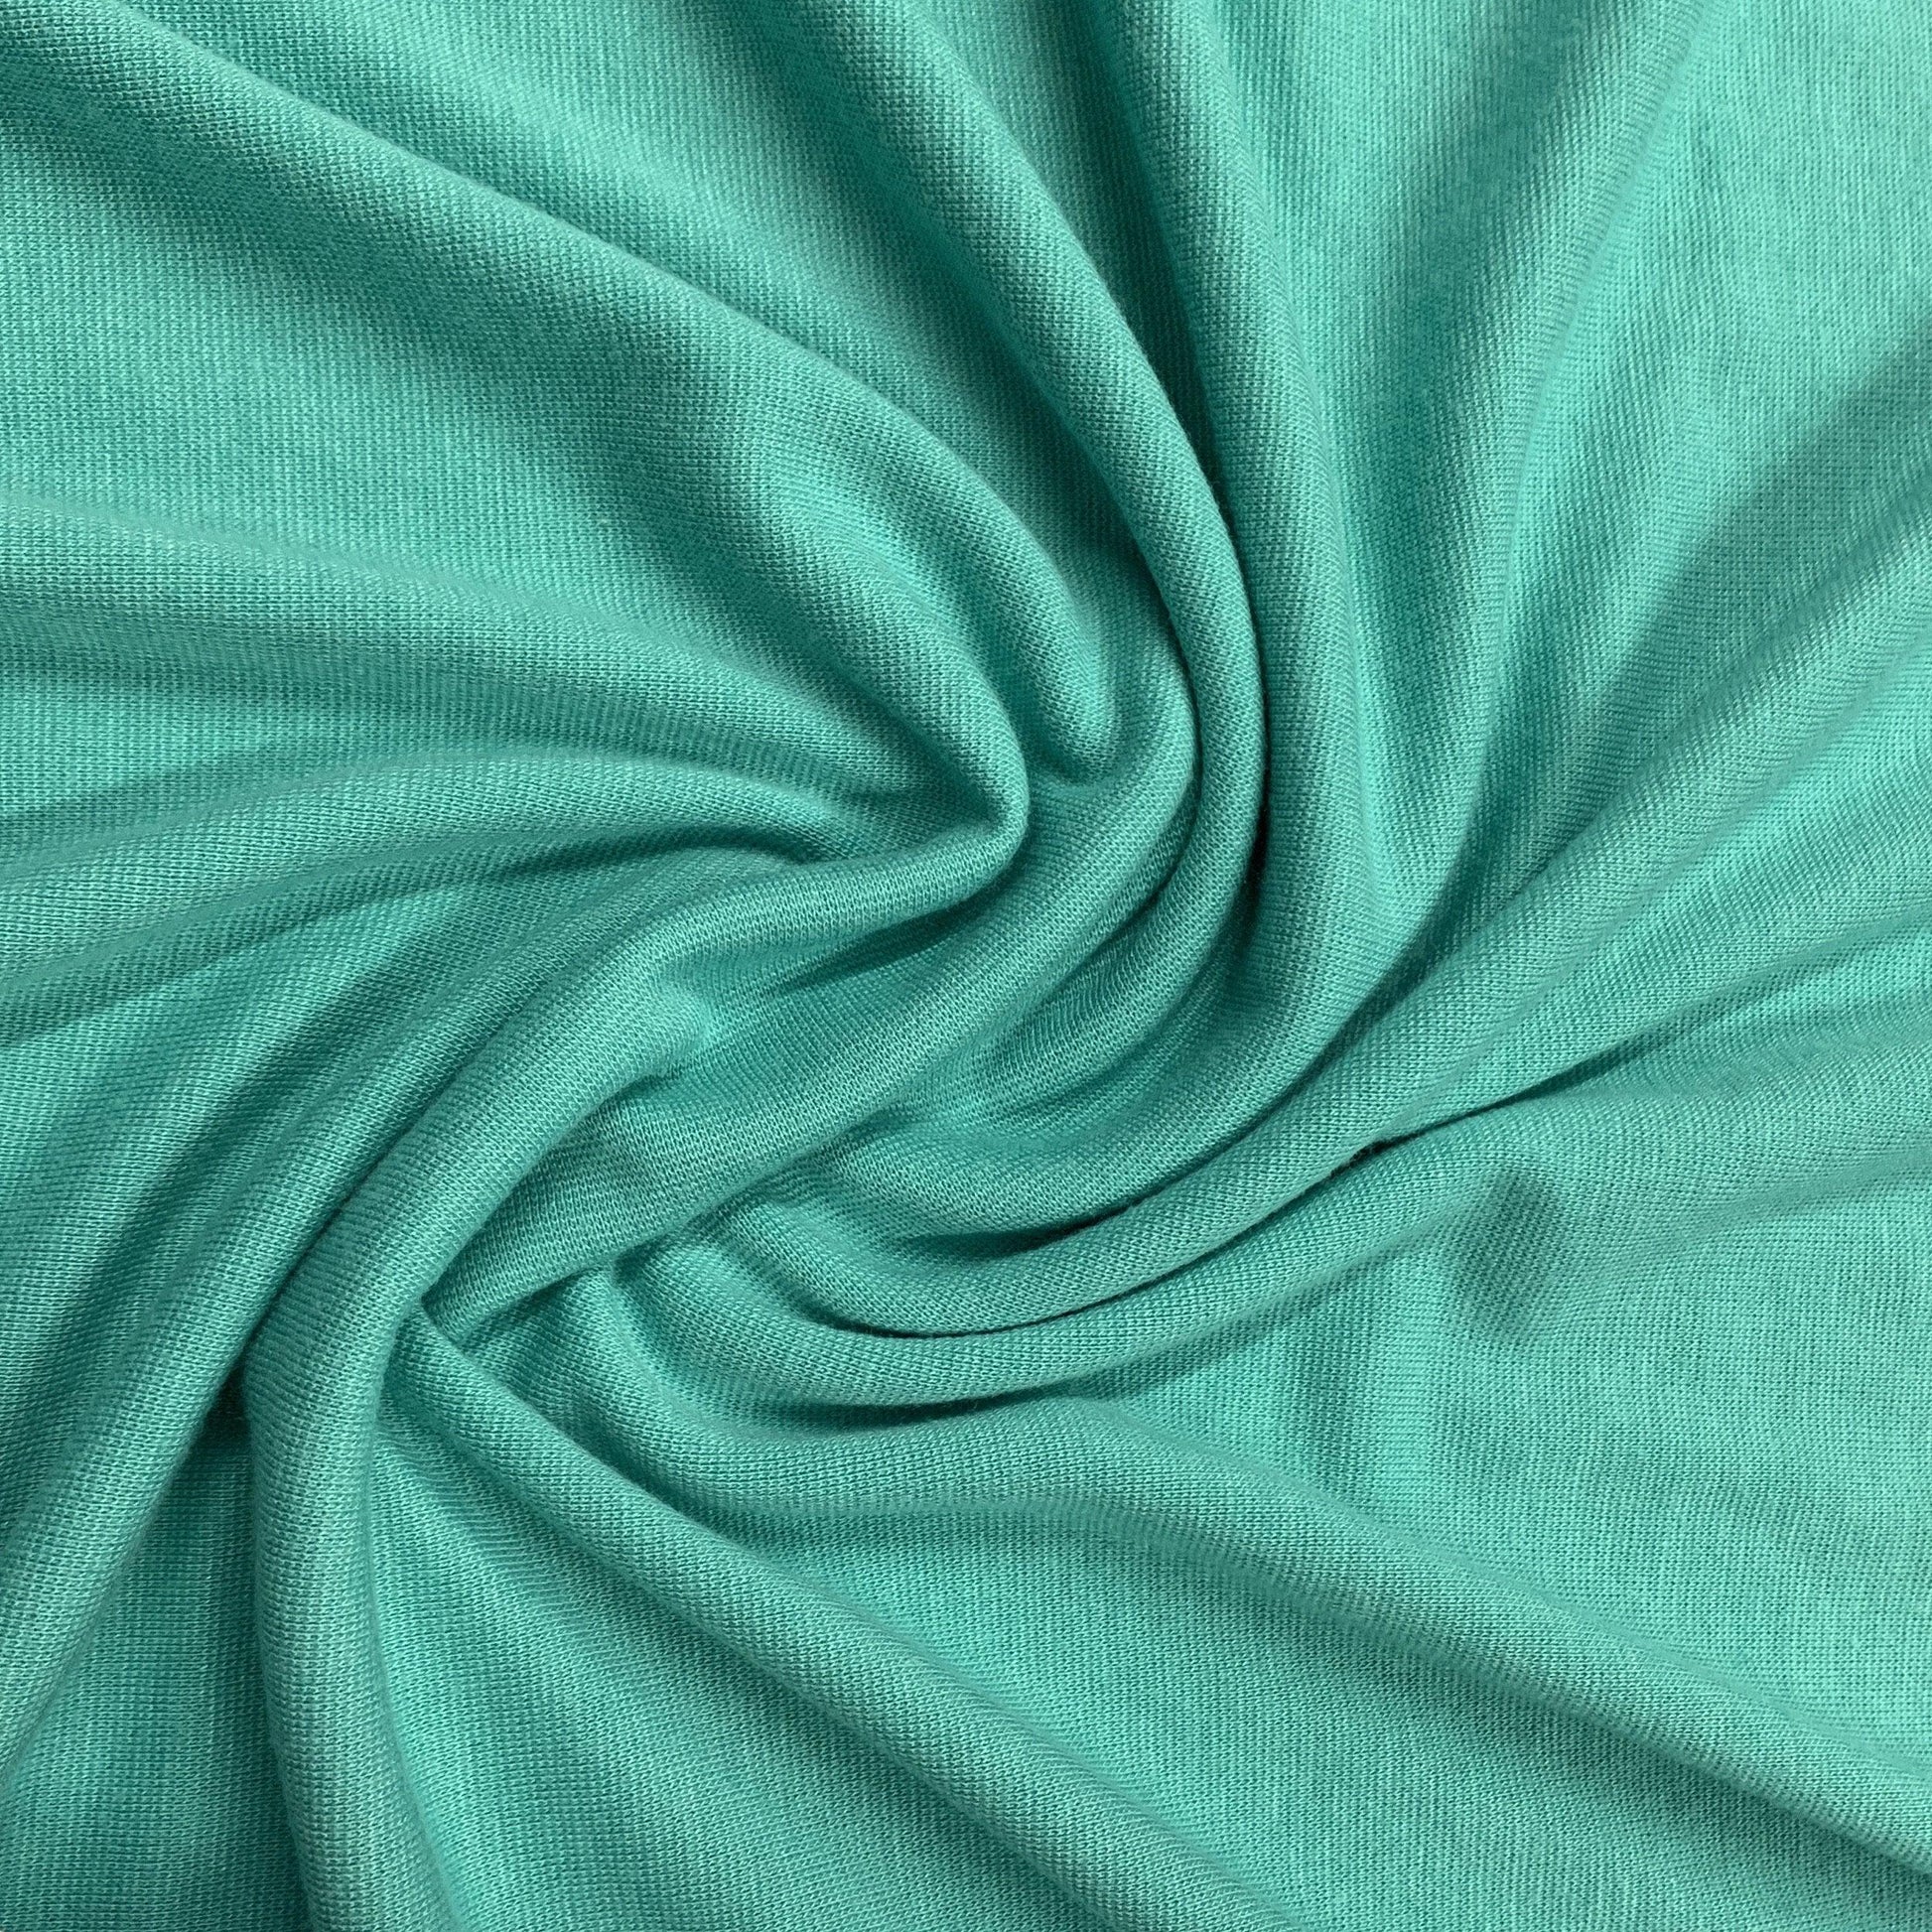 Bali Bamboo/Spandex Jersey Fabric - Nature's Fabrics